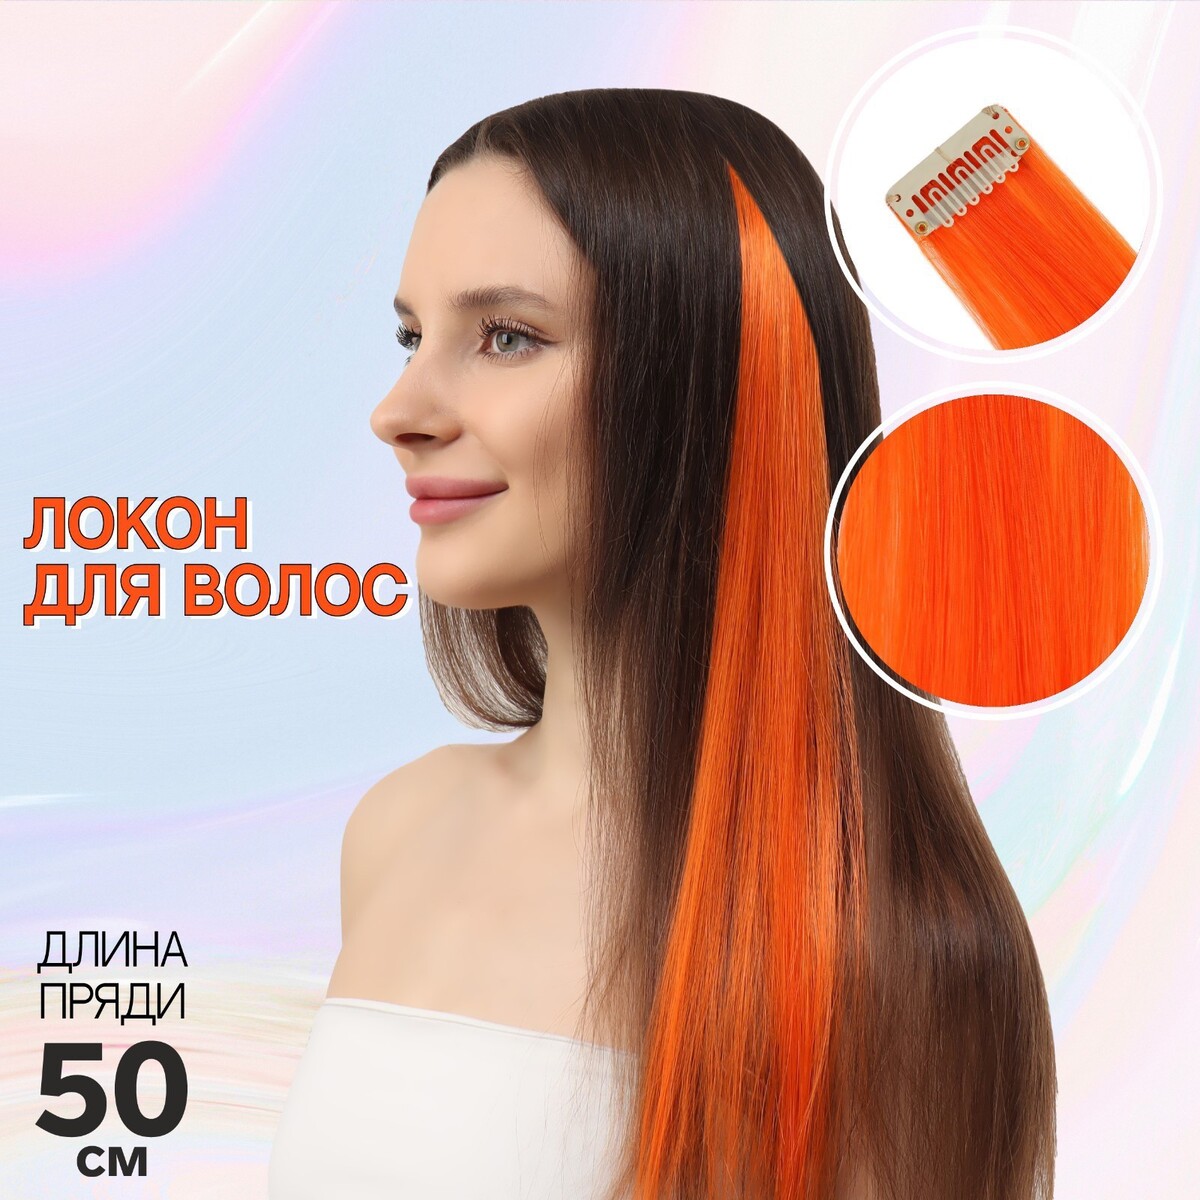 Локон накладной, прямой волос, на заколке, 50 см, 5 гр, цвет оранжевый локон накладной прямой волос на заколке 50 см 5 гр жёлтый